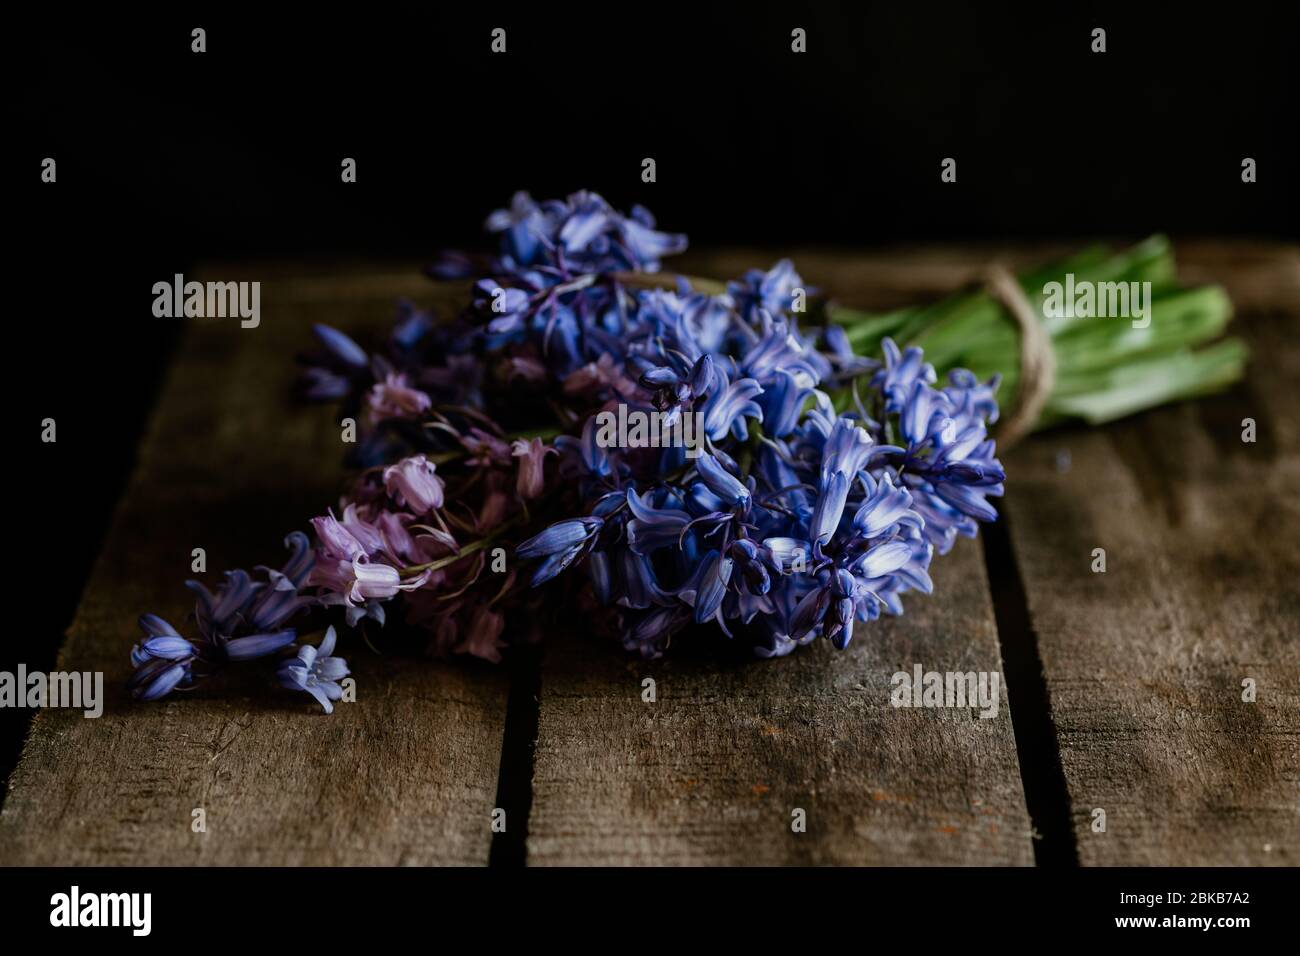 el común bluebell es un maravilloso tema para la fotografía. Estas imágenes de luz natural muestran la majestuosidad de la planta y serían un gran arte de la pared Foto de stock